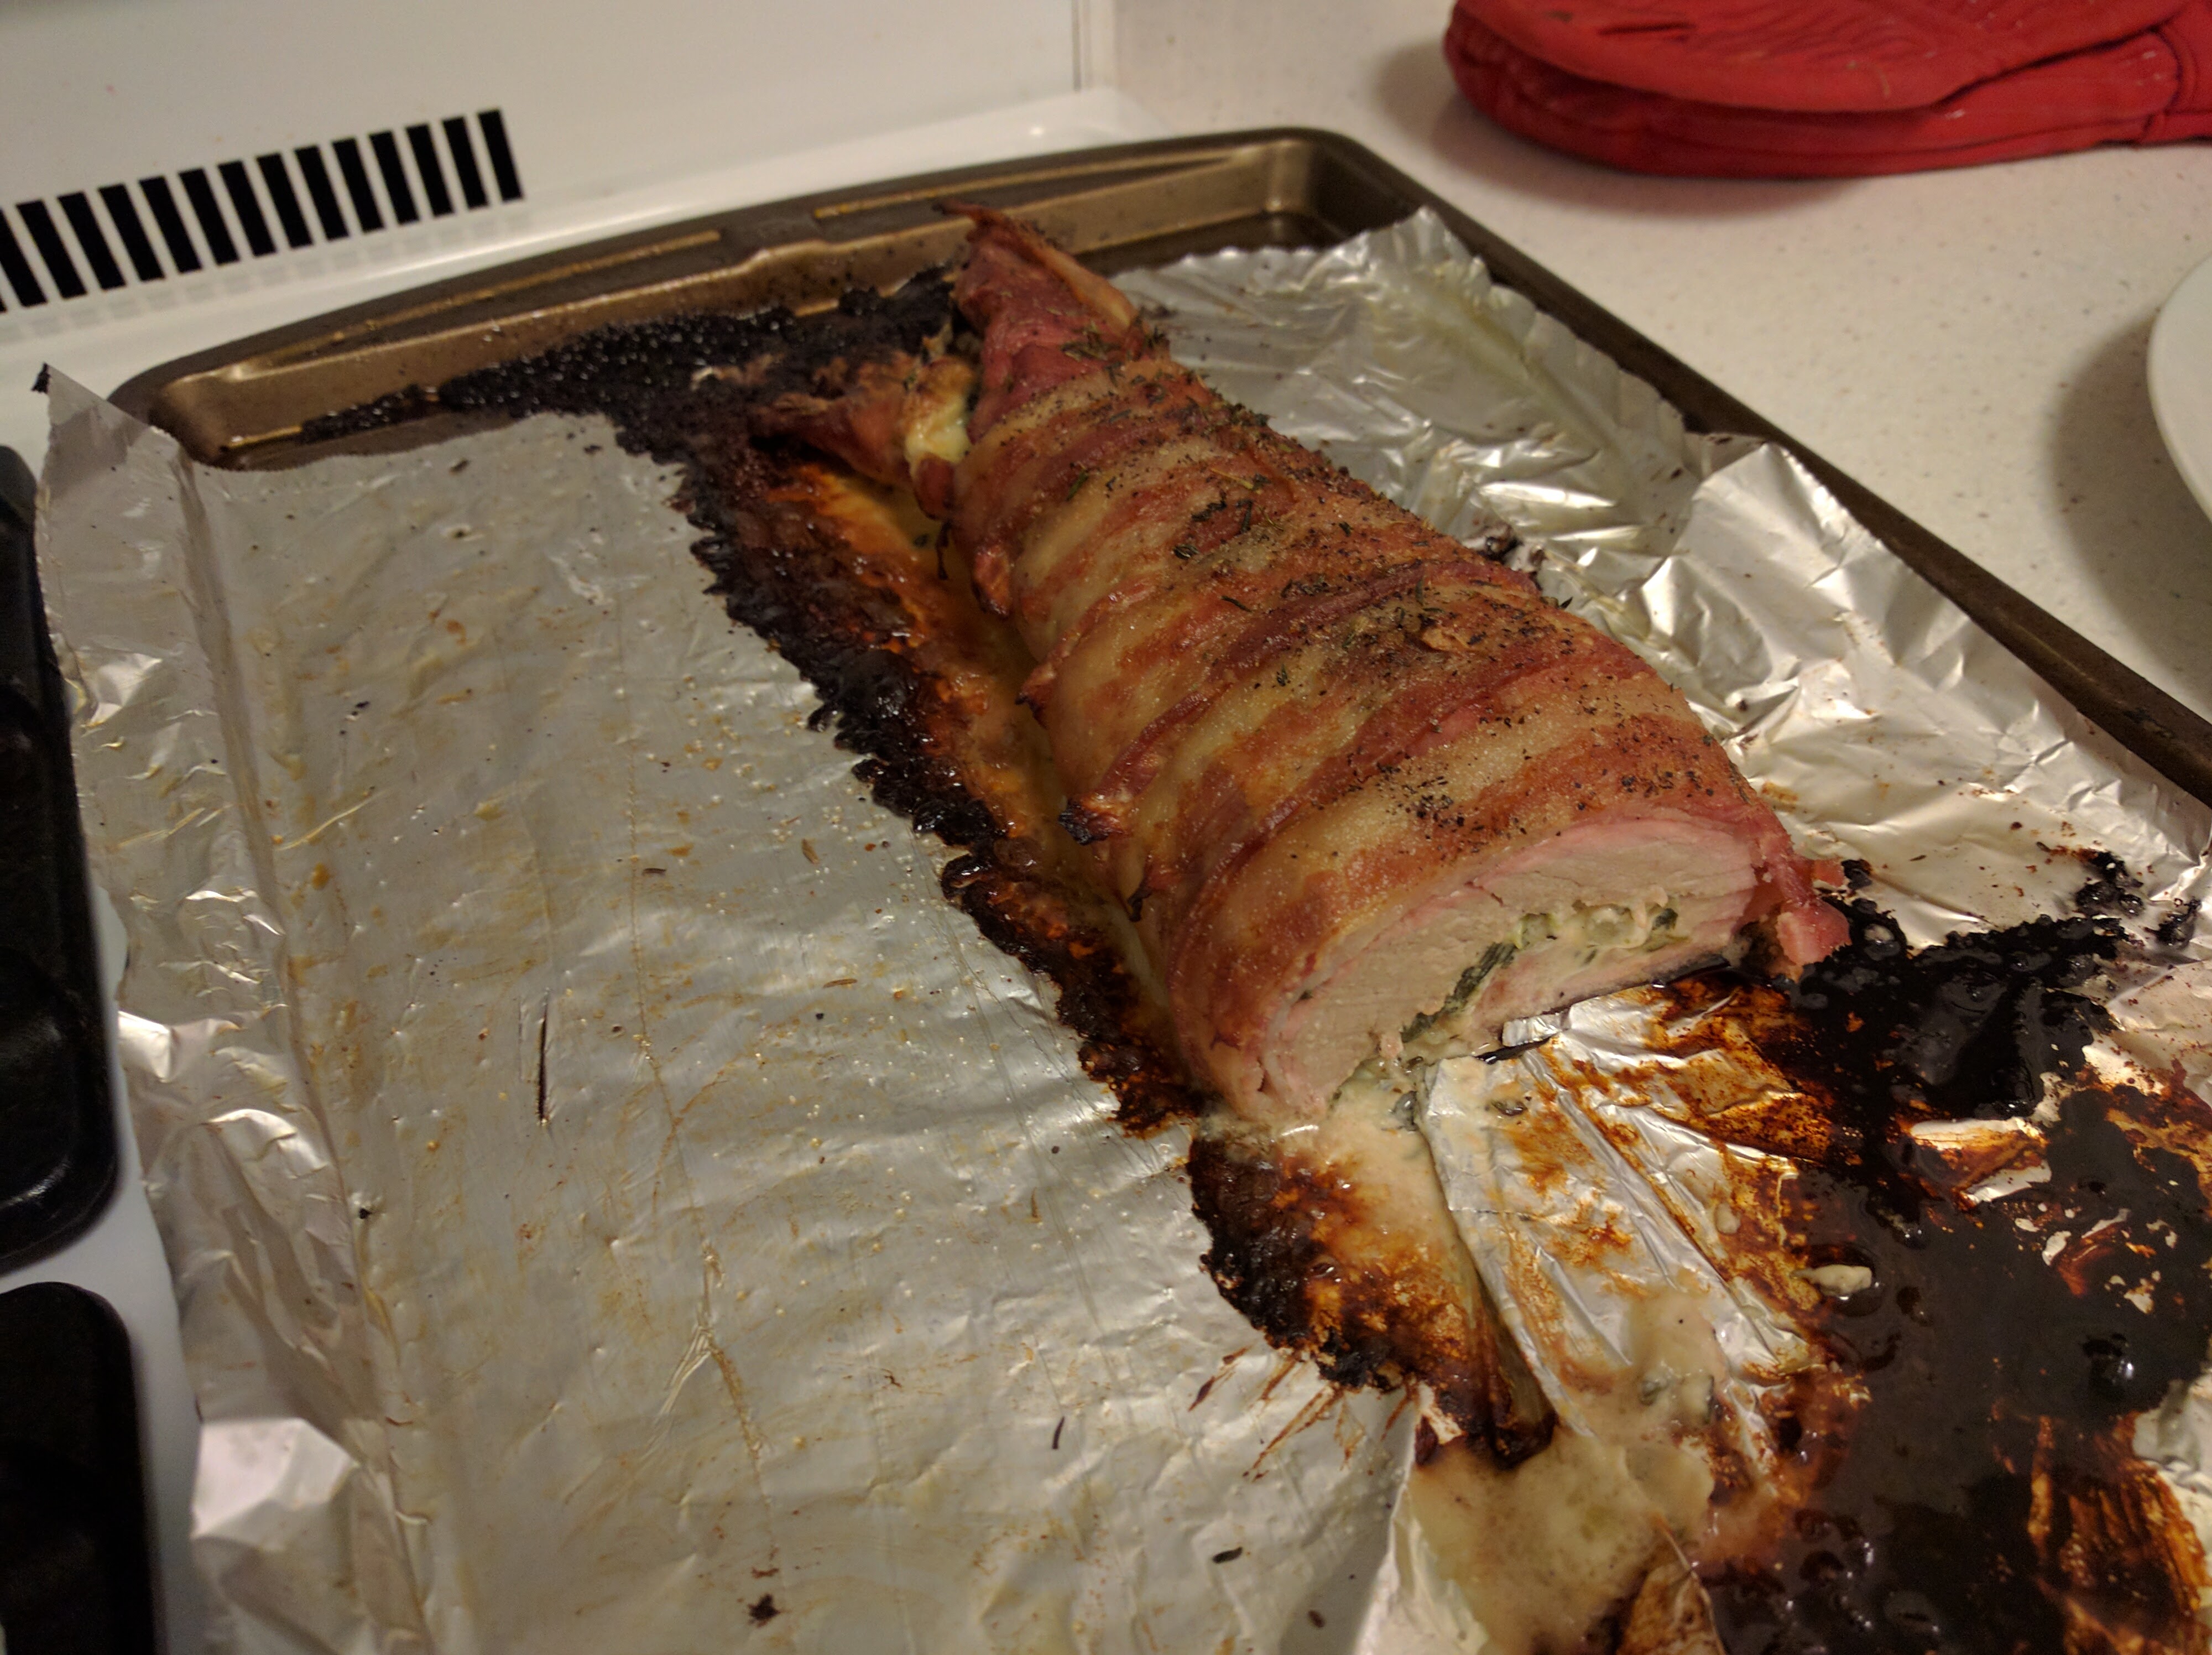 Finished pork tenderloin on baking sheet